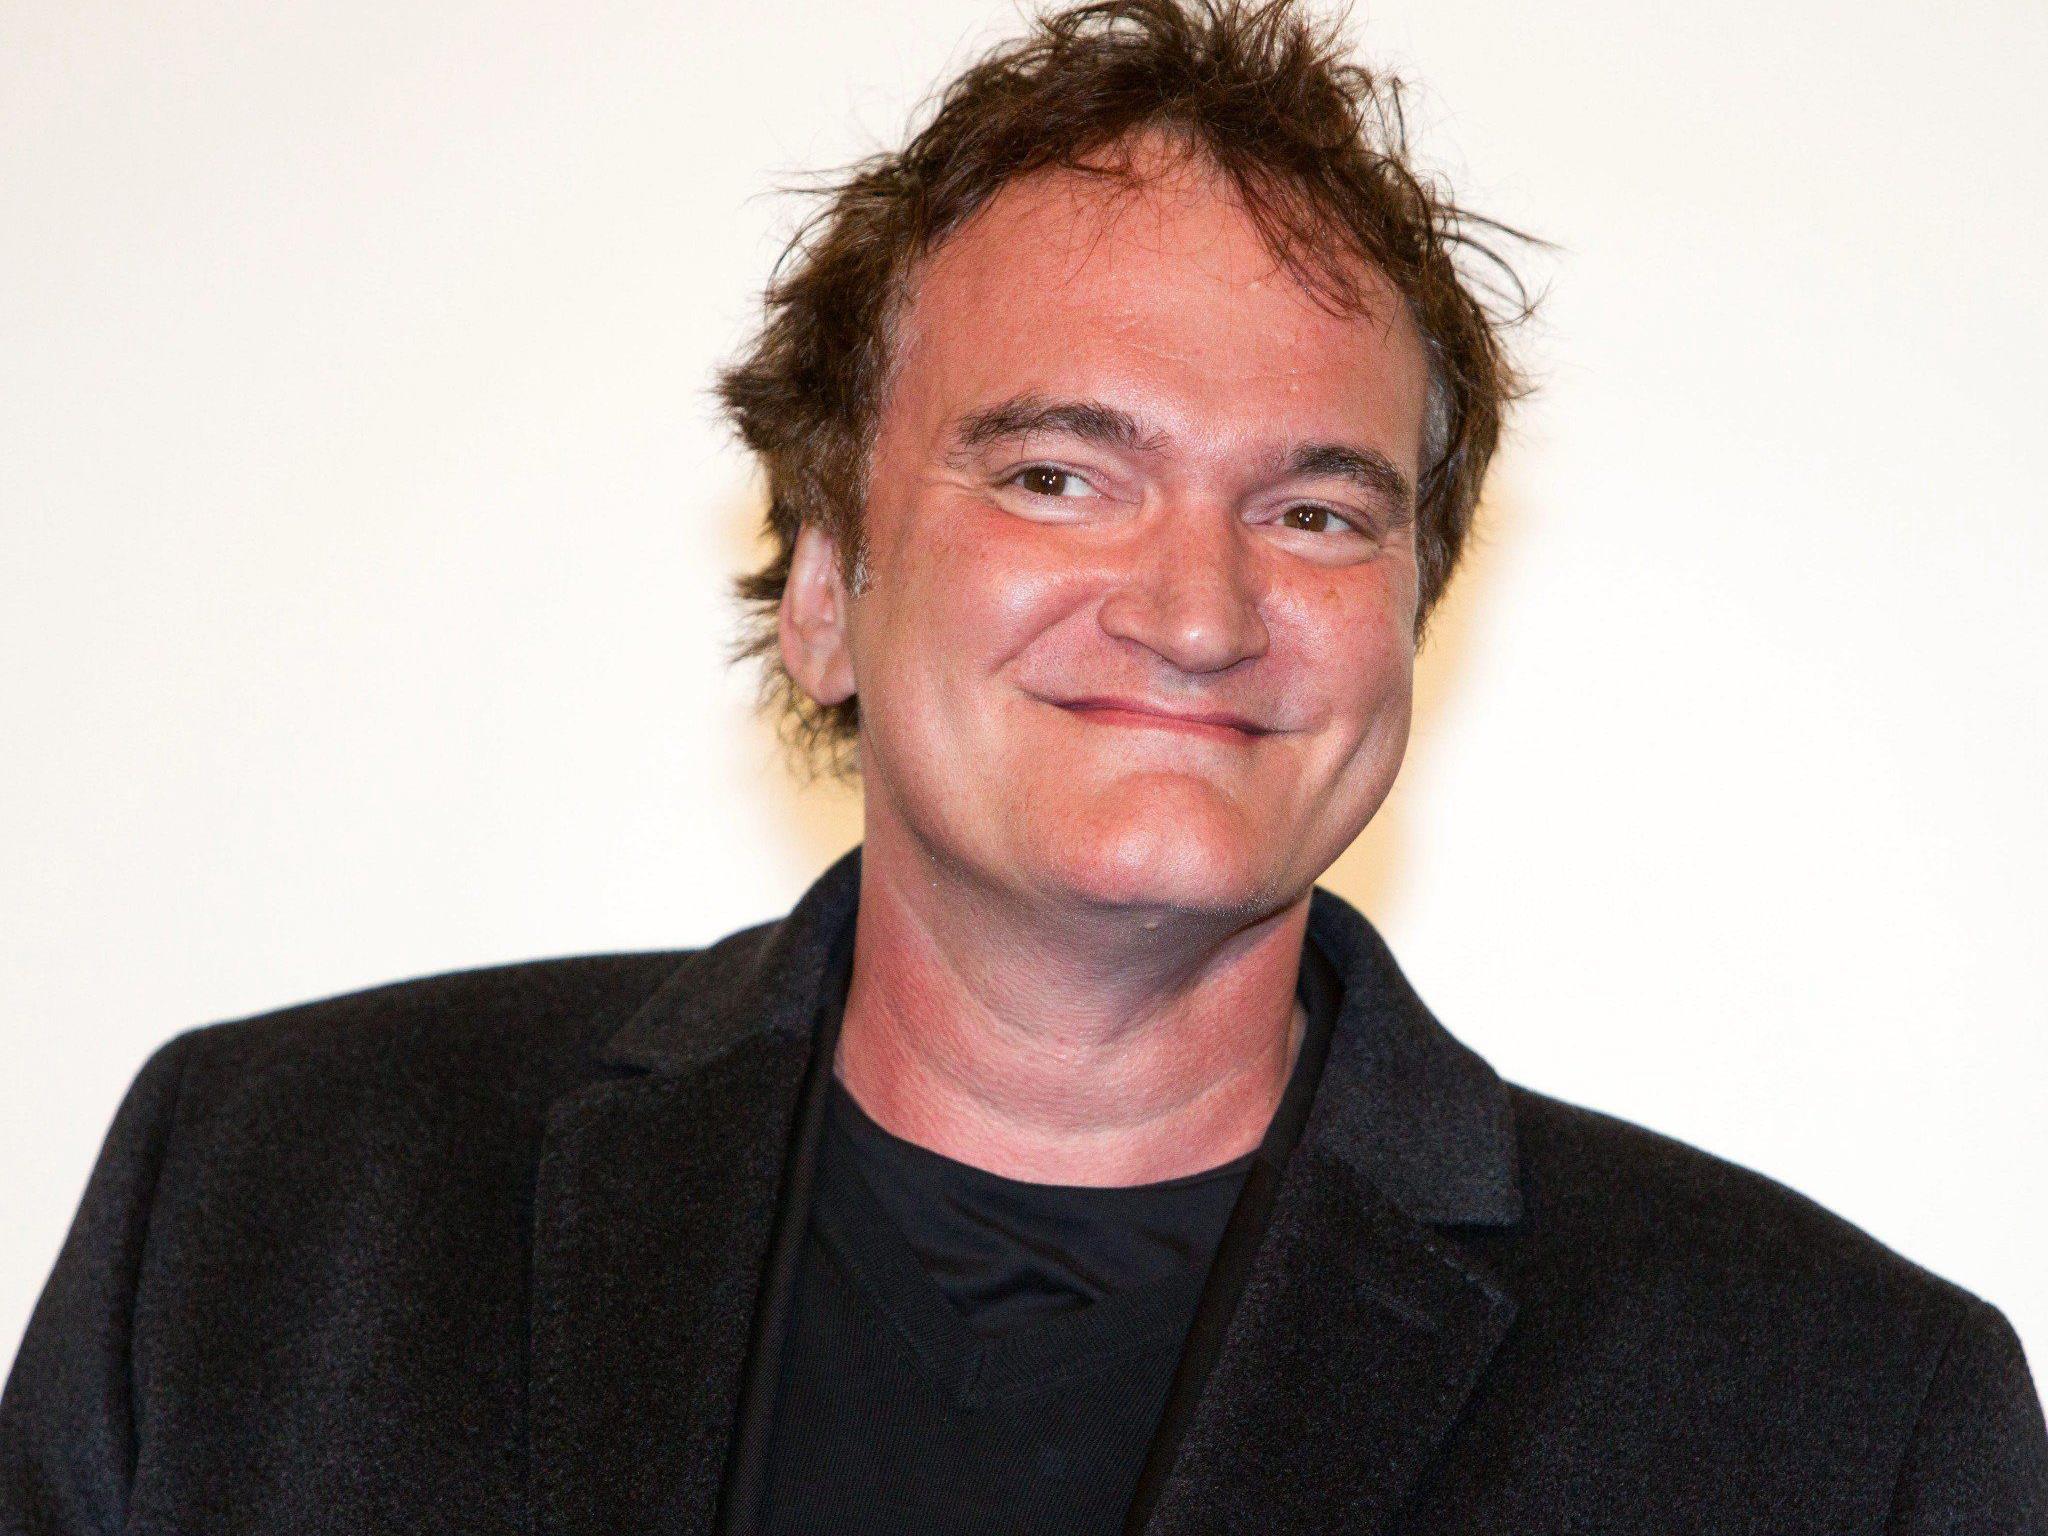 Gestohlenes Cabrio aus Quentin Tarantinos Kult-Film "Pulp Fiction" wieder aufgetaucht.